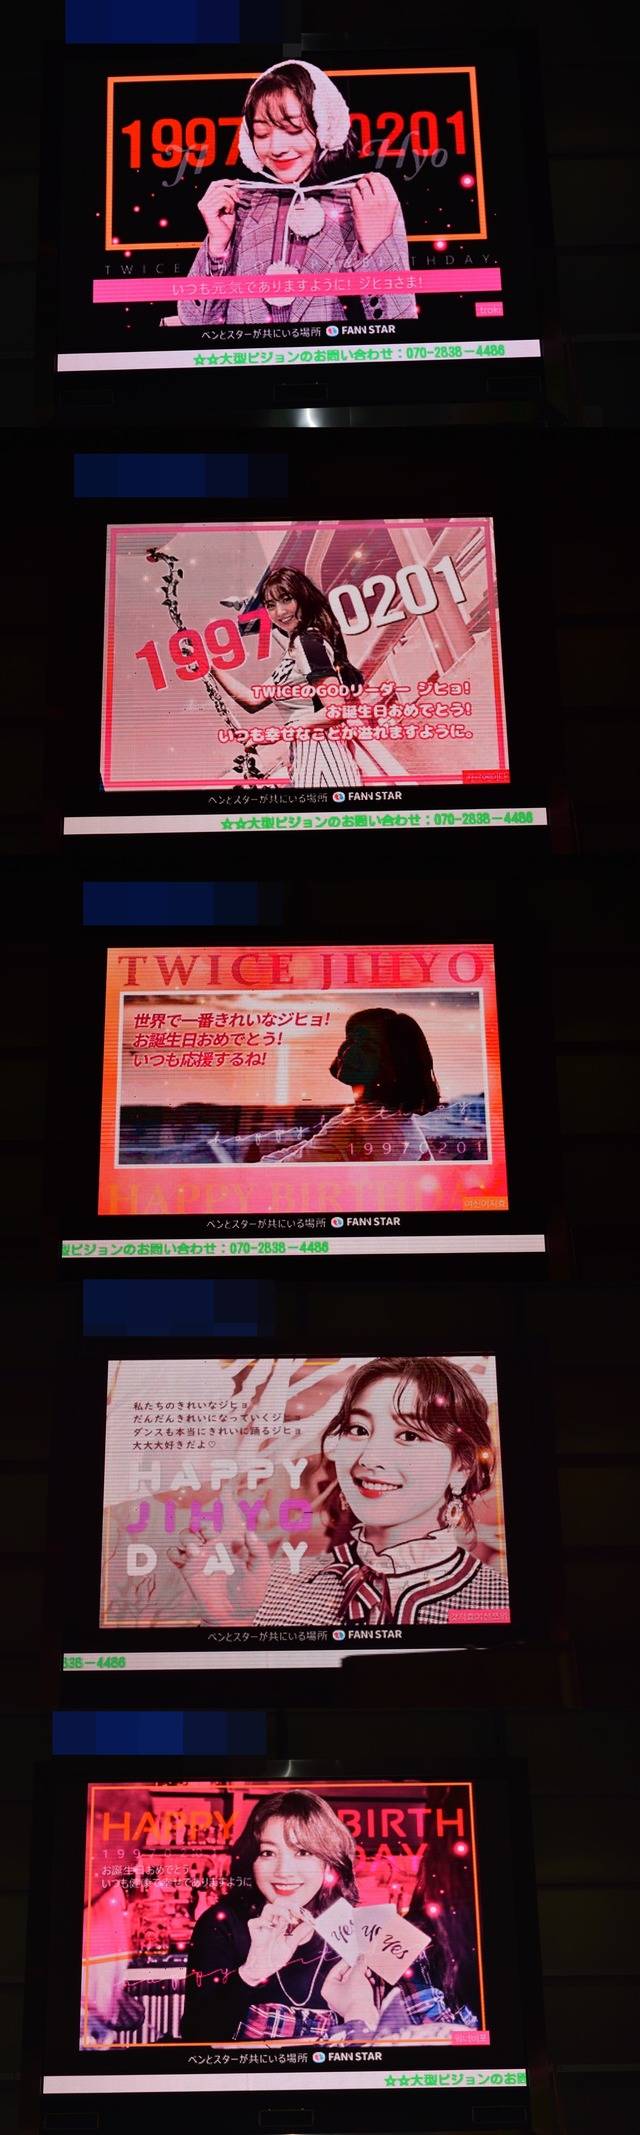 지효야, 생일 축하해 1일 일본 도쿄에 위치한 전광판에서 그룹 트와이스 지효의 생일 축하 영상이 상영 중이다. /팬앤스타